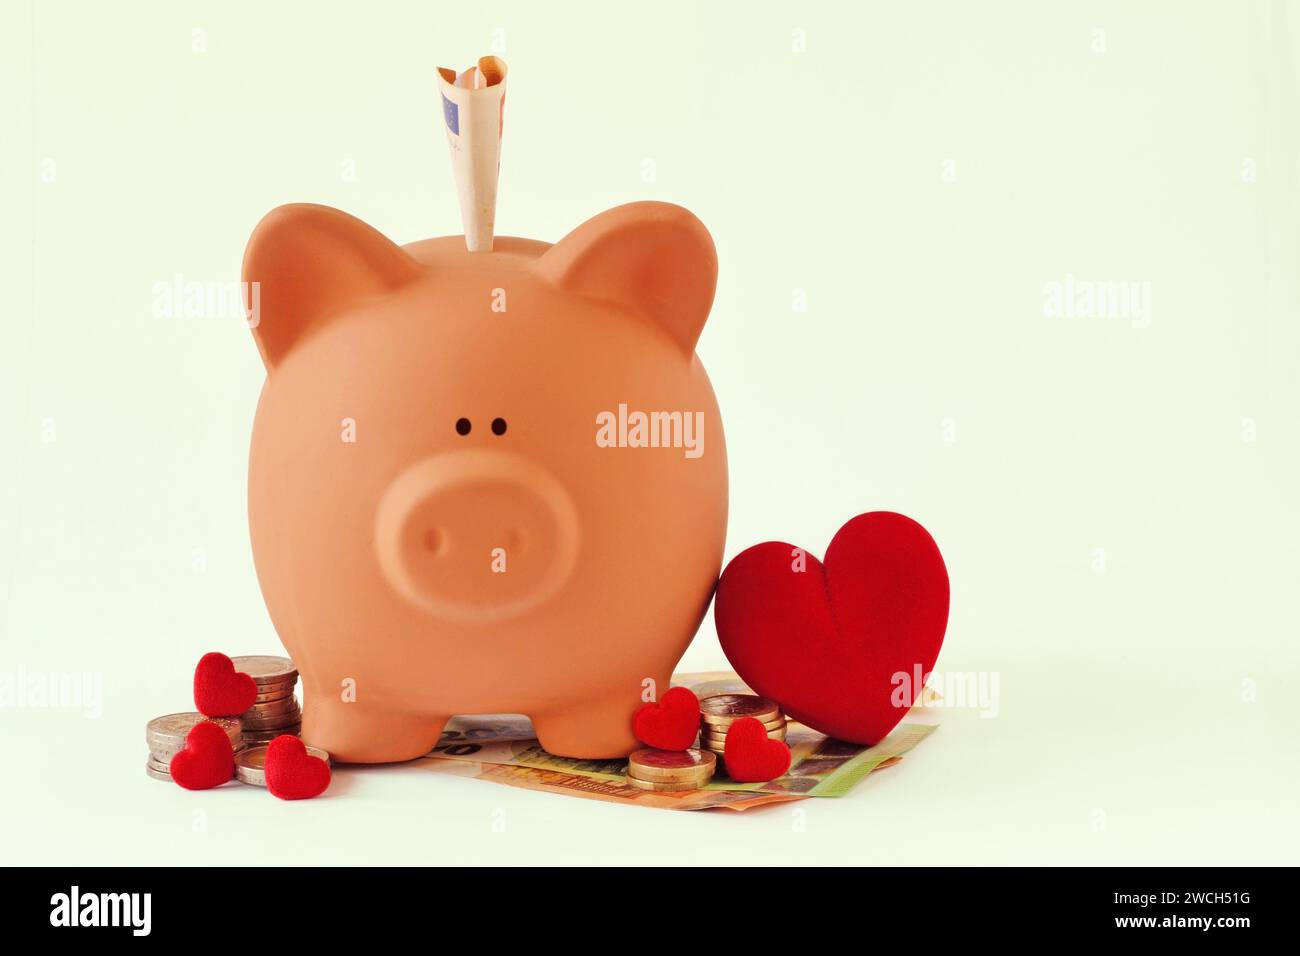 Schweinebank mit Herzen und Geld auf weißem Hintergrund - Konzept von Sparen, Liebe und Spende Stockfoto